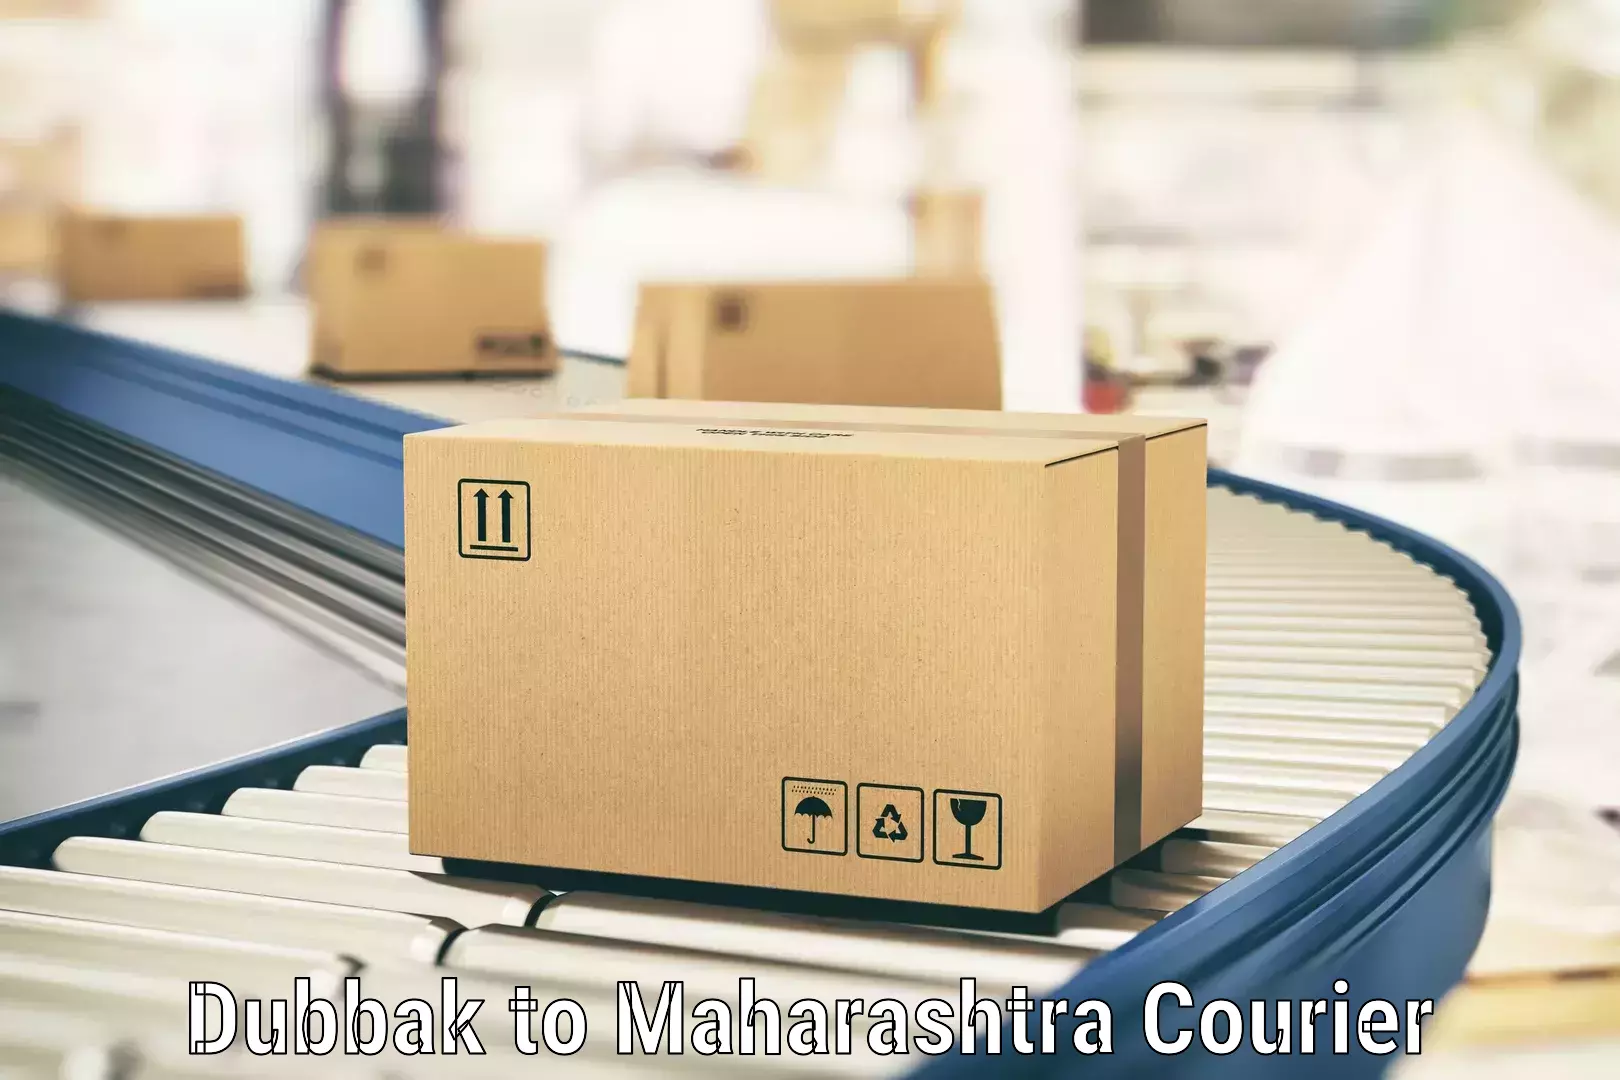 Comprehensive shipping network Dubbak to Maharashtra